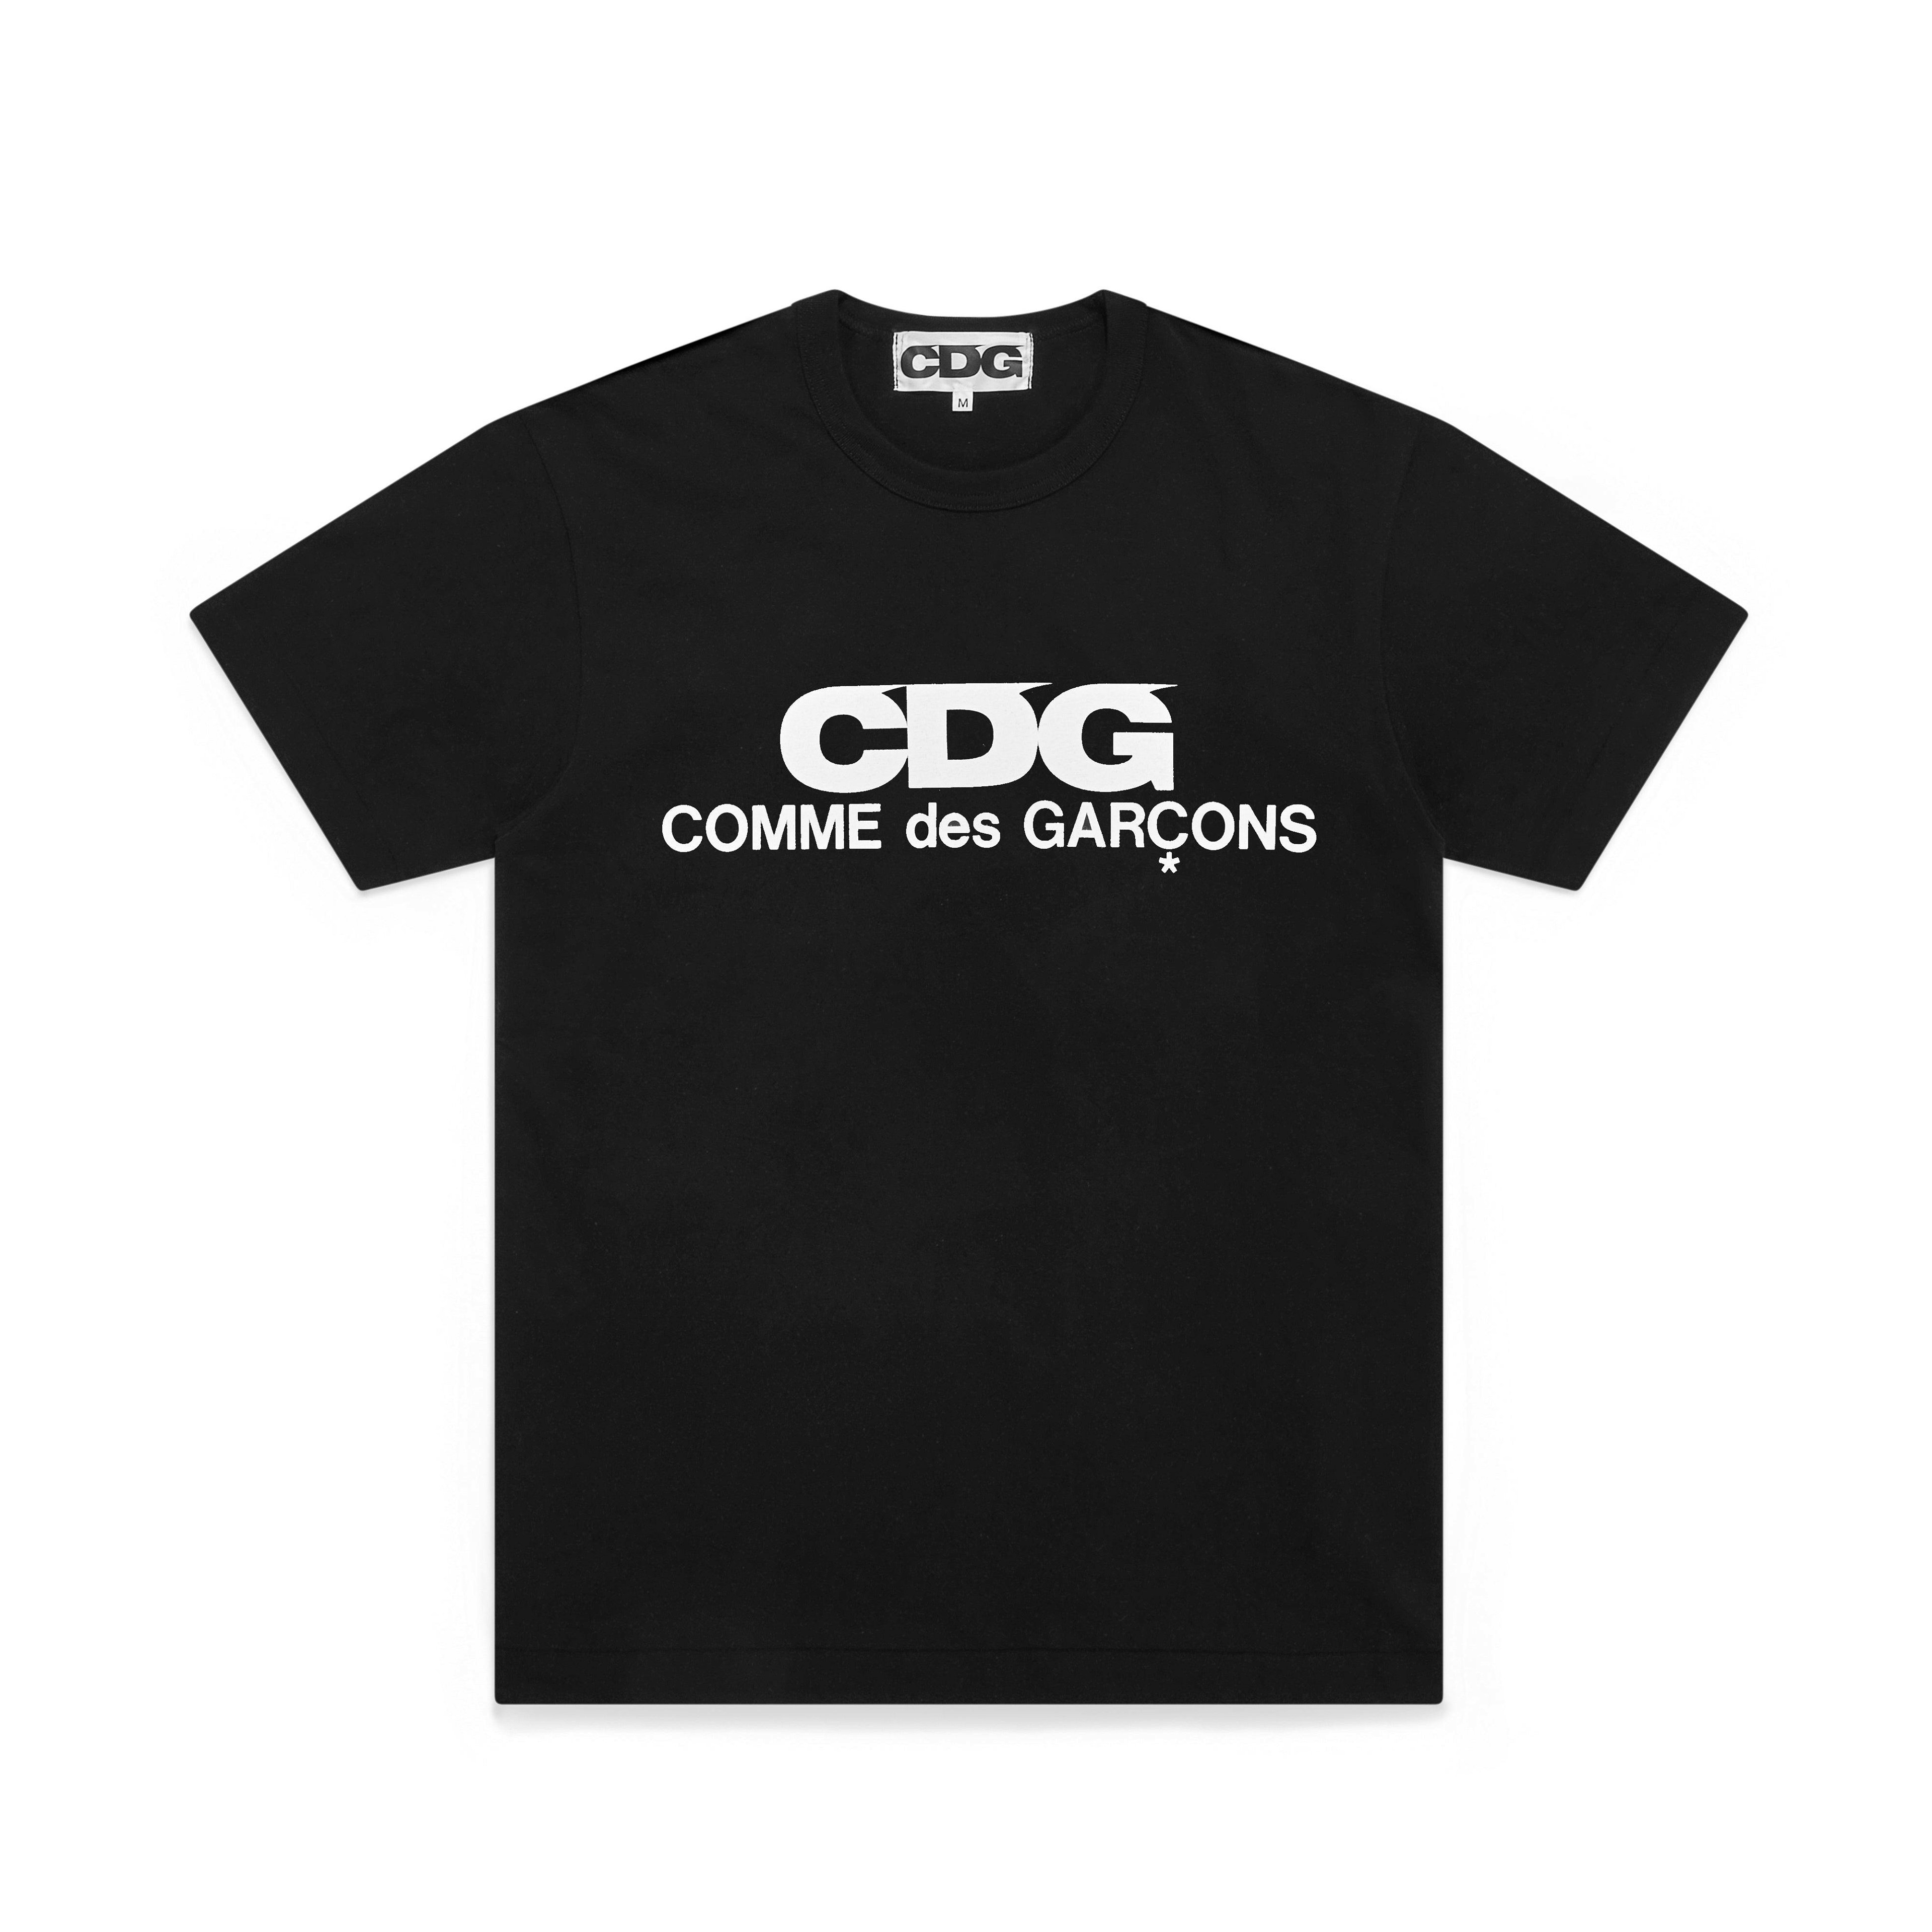 CDG - CDG Logo T-Shirt - (Black) by COMME DES GARCONS